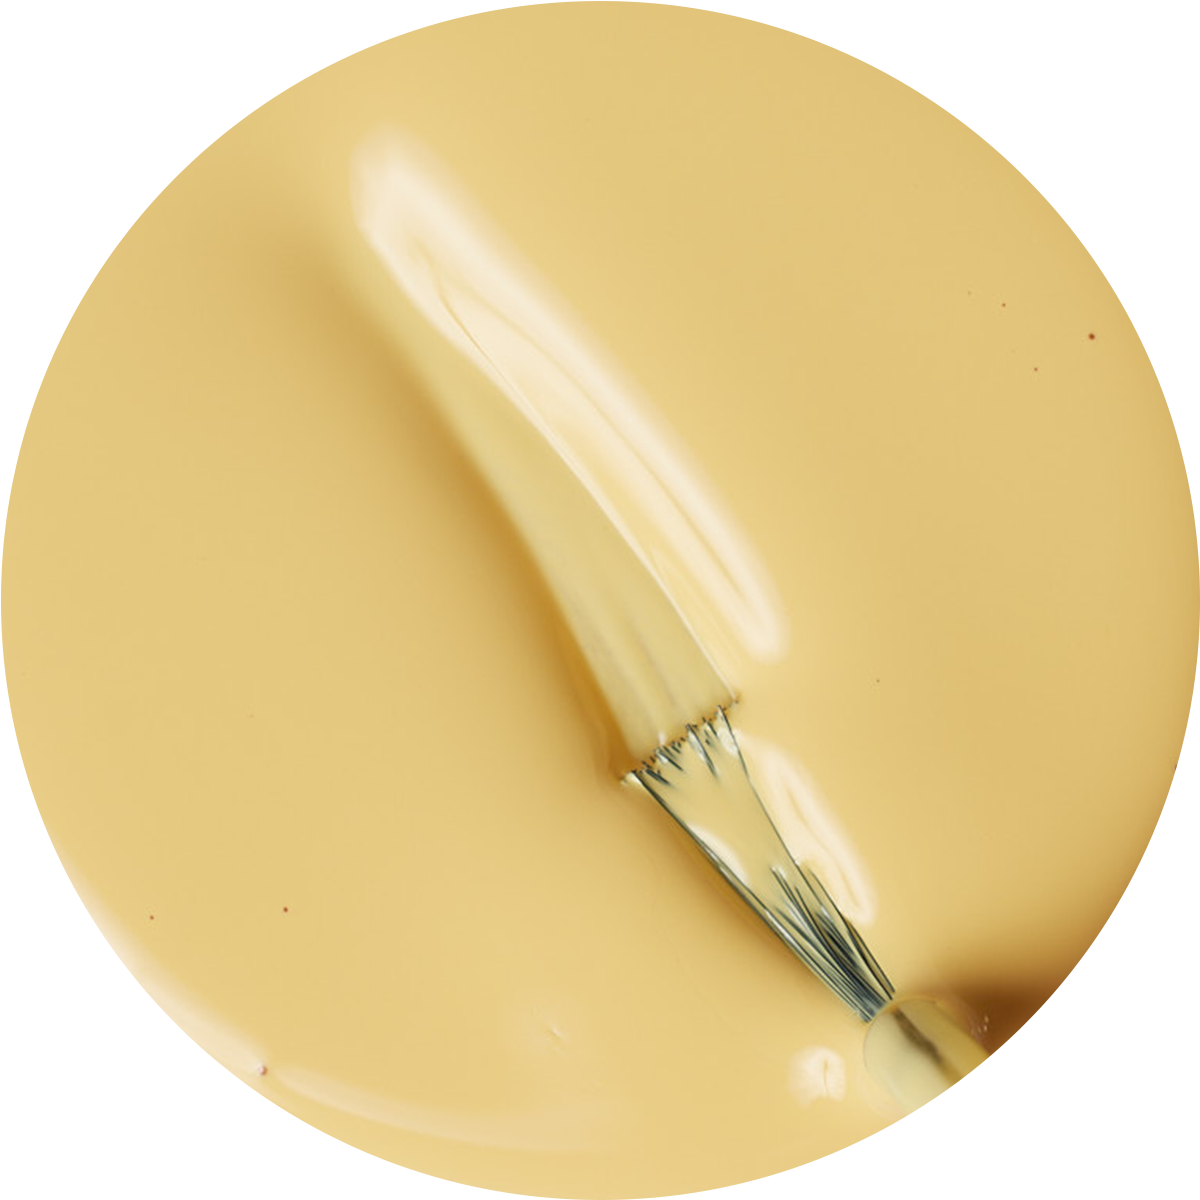 paint swatch of light yellow nail polish